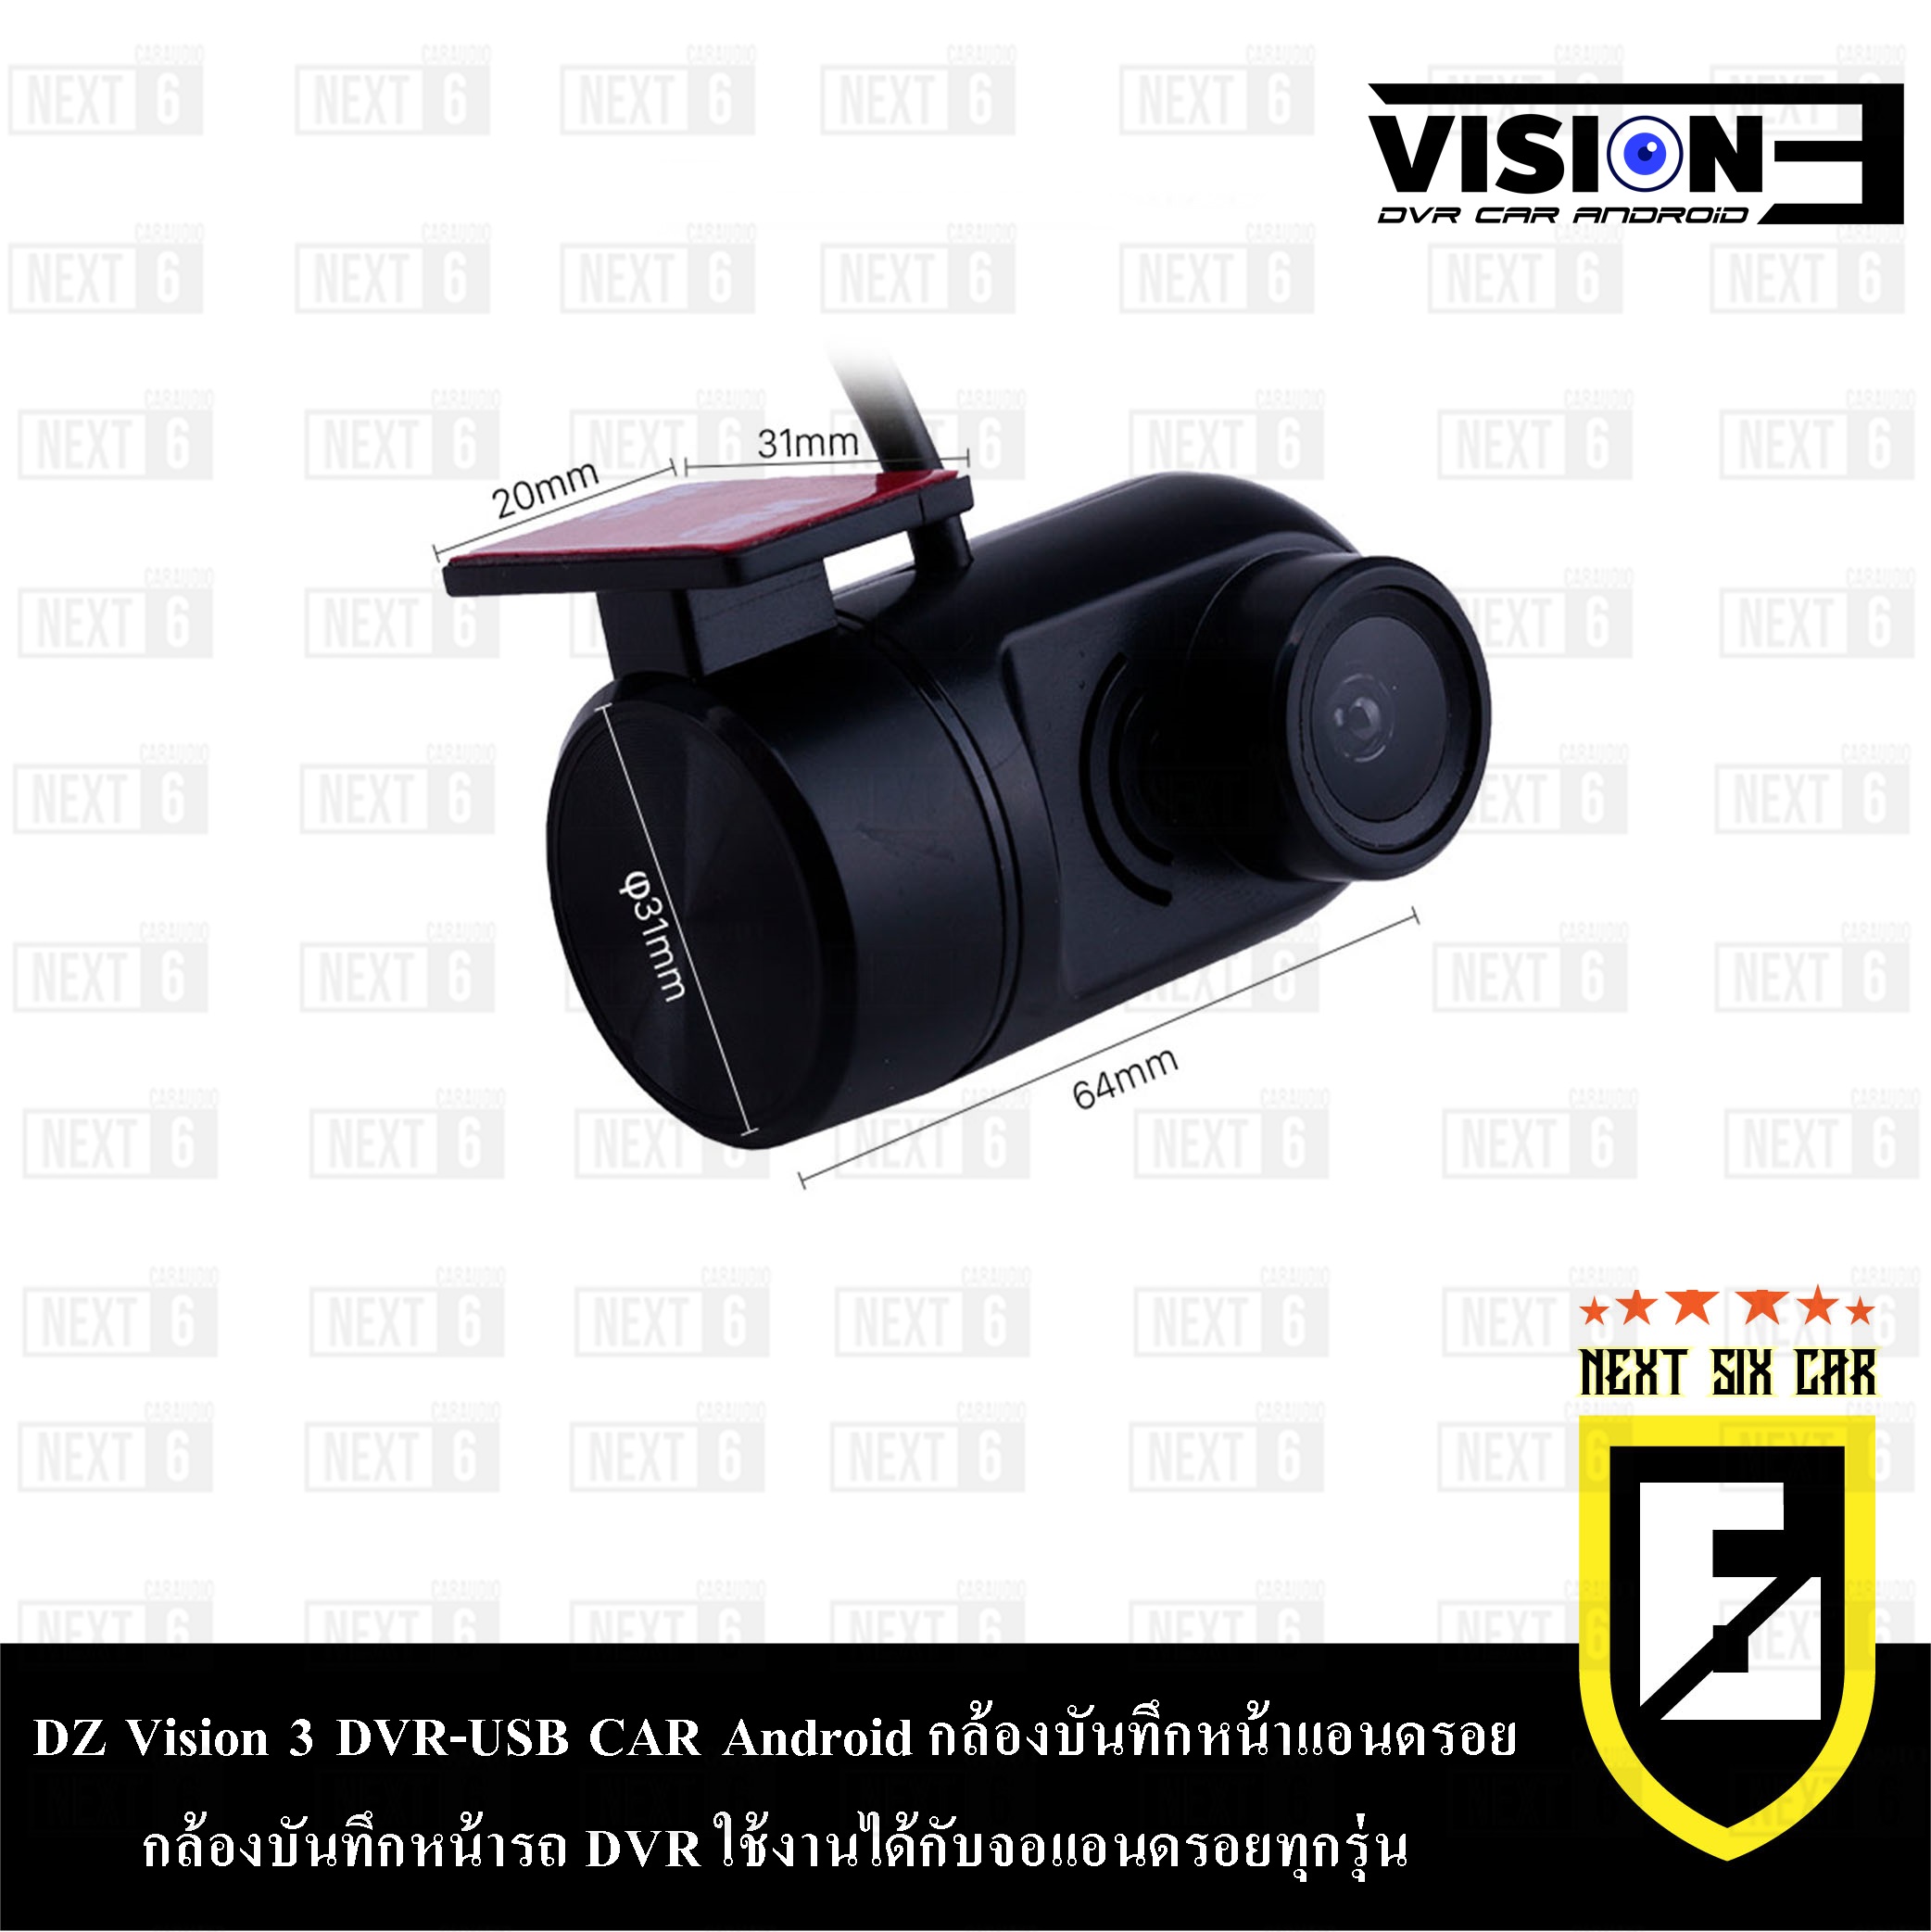 DZ Vision 3 DVR-USB CAR Android กล้องบันทึกหน้าแอนดรอย กล้องบันทึกหน้ารถ DVR ใช้งานได้กับจอแอนดรอยทุกรุ่น